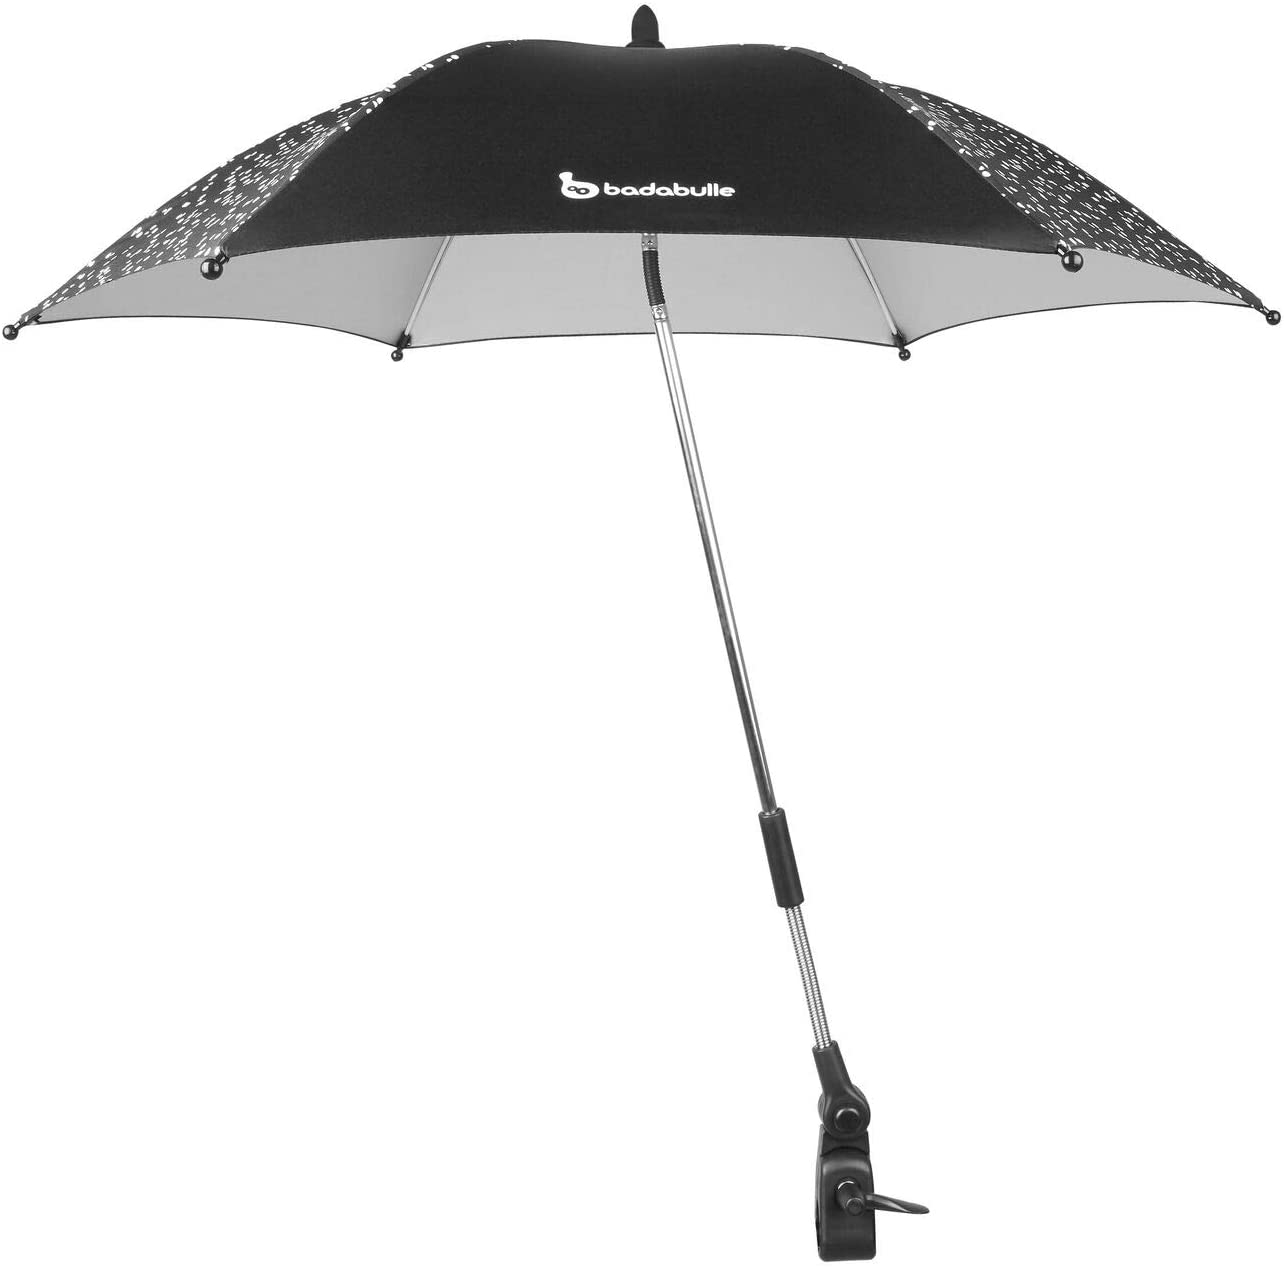 Babadulle - Umbrela universala anti-UV, neagra imagine